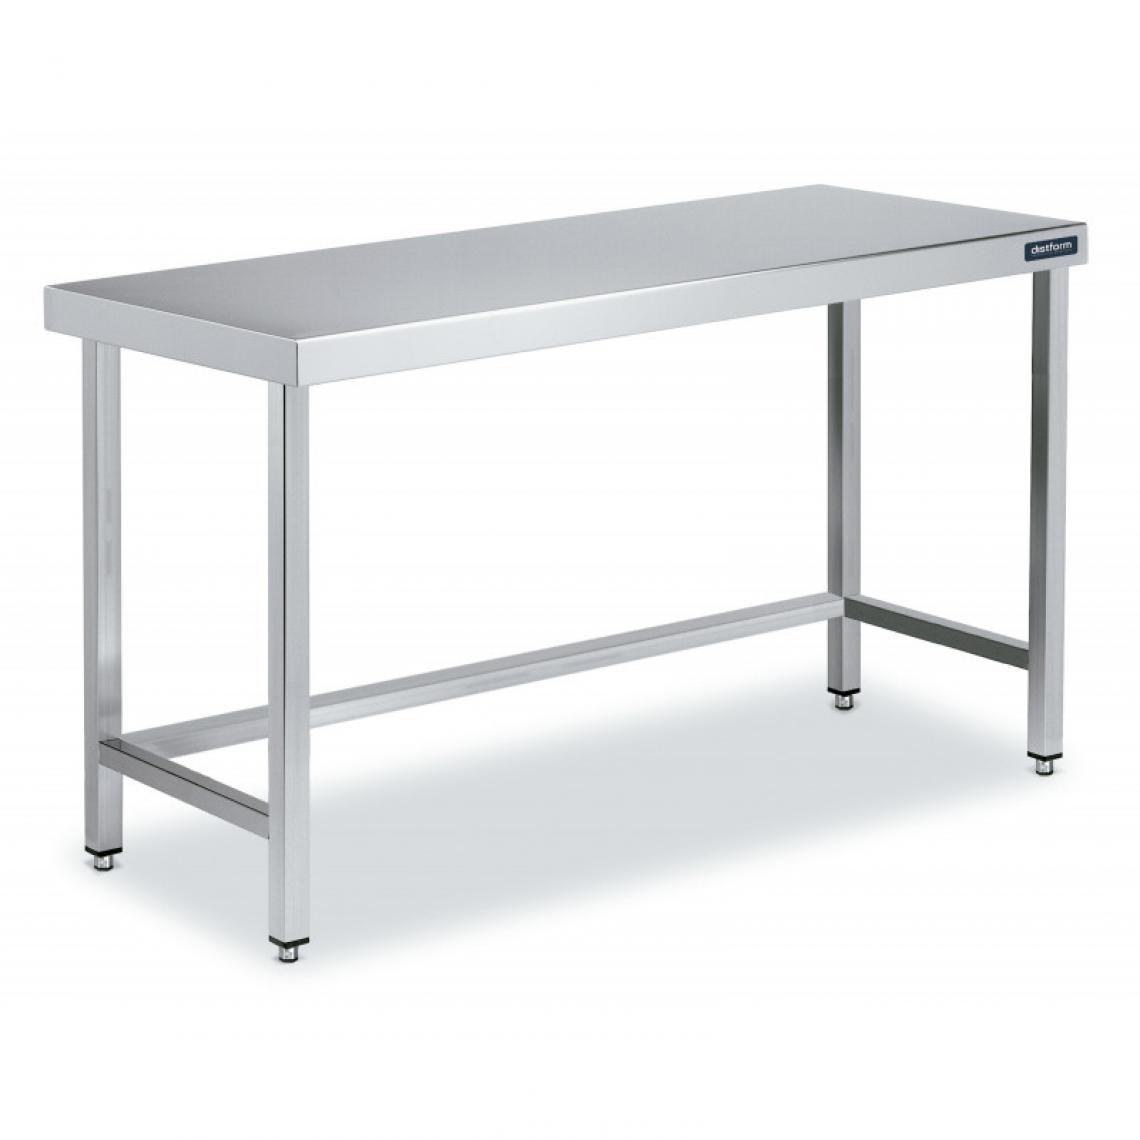 DISTFORM - Table Inox de Travail Centrale avec Renforts - Gamme 550 - Distform - Acier inoxydable1800x550 - Tables à manger